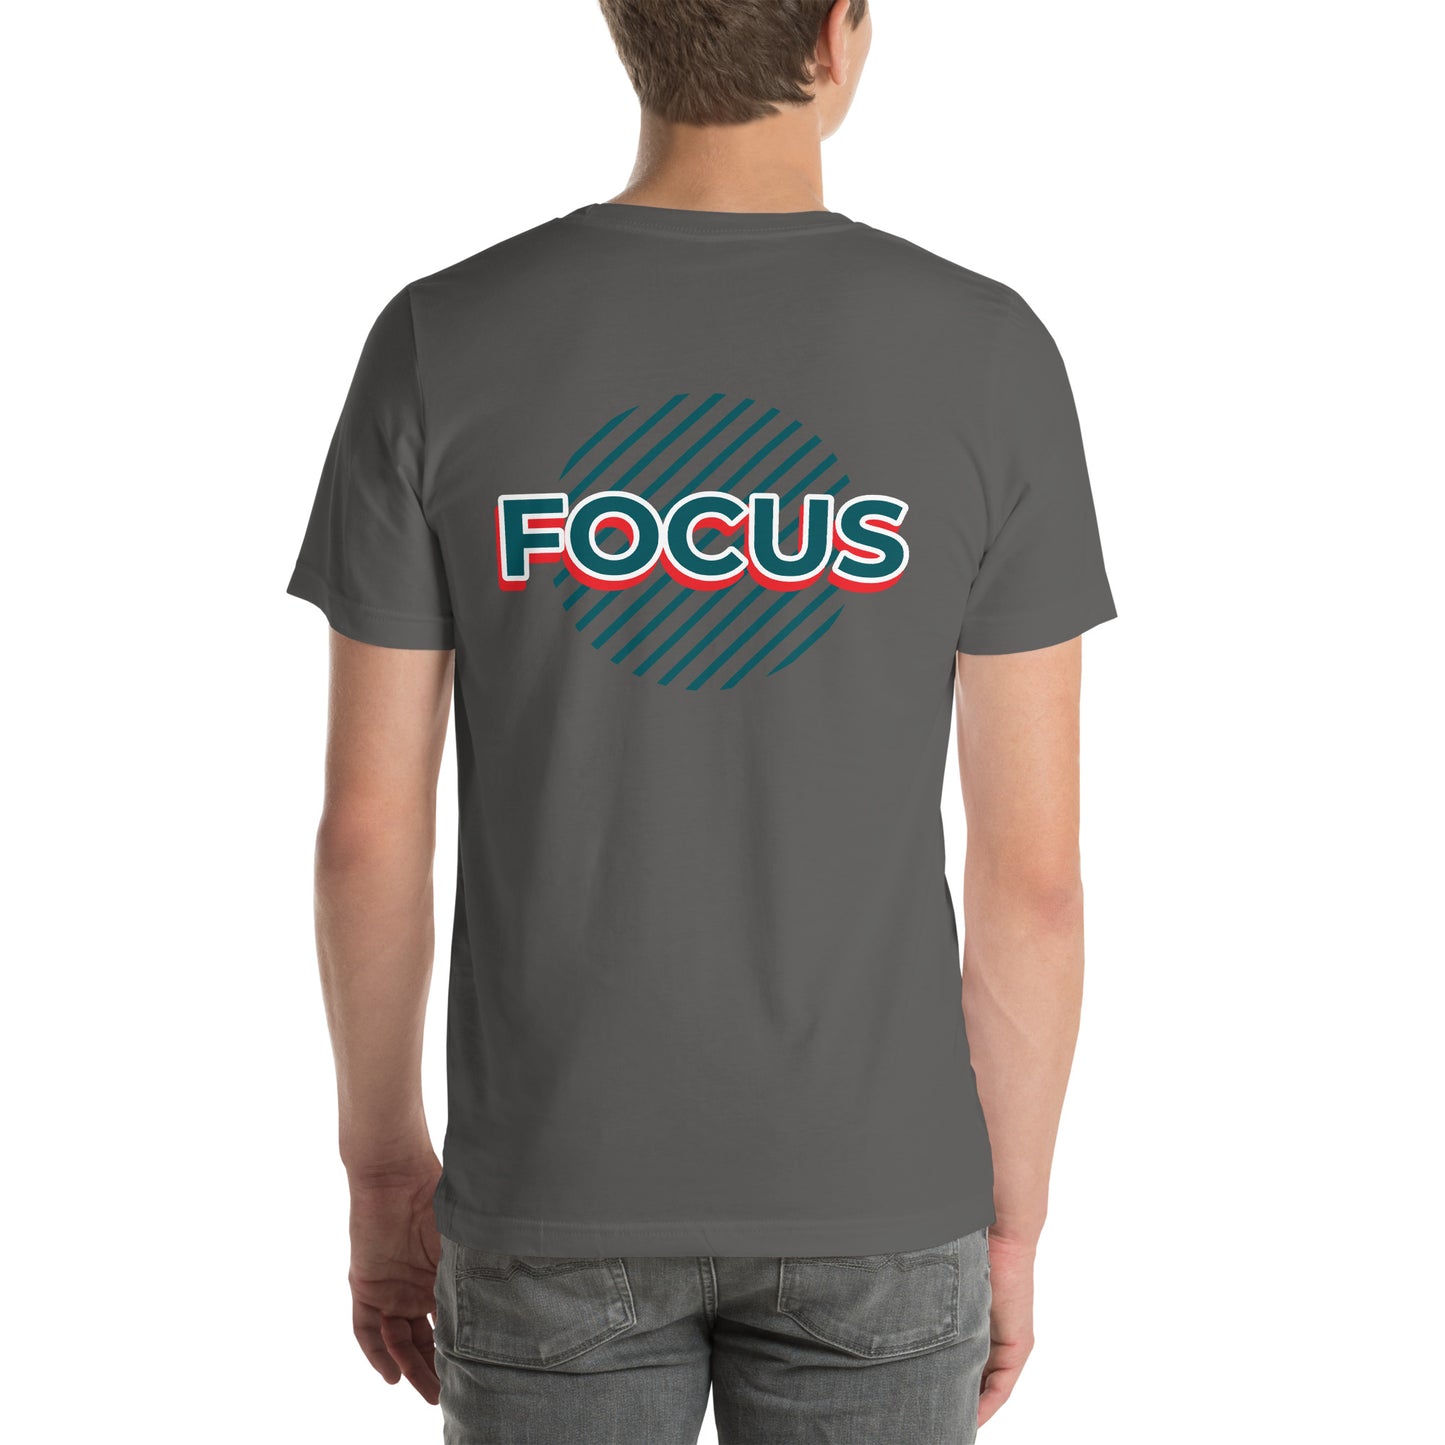 Villani Focus Shirt